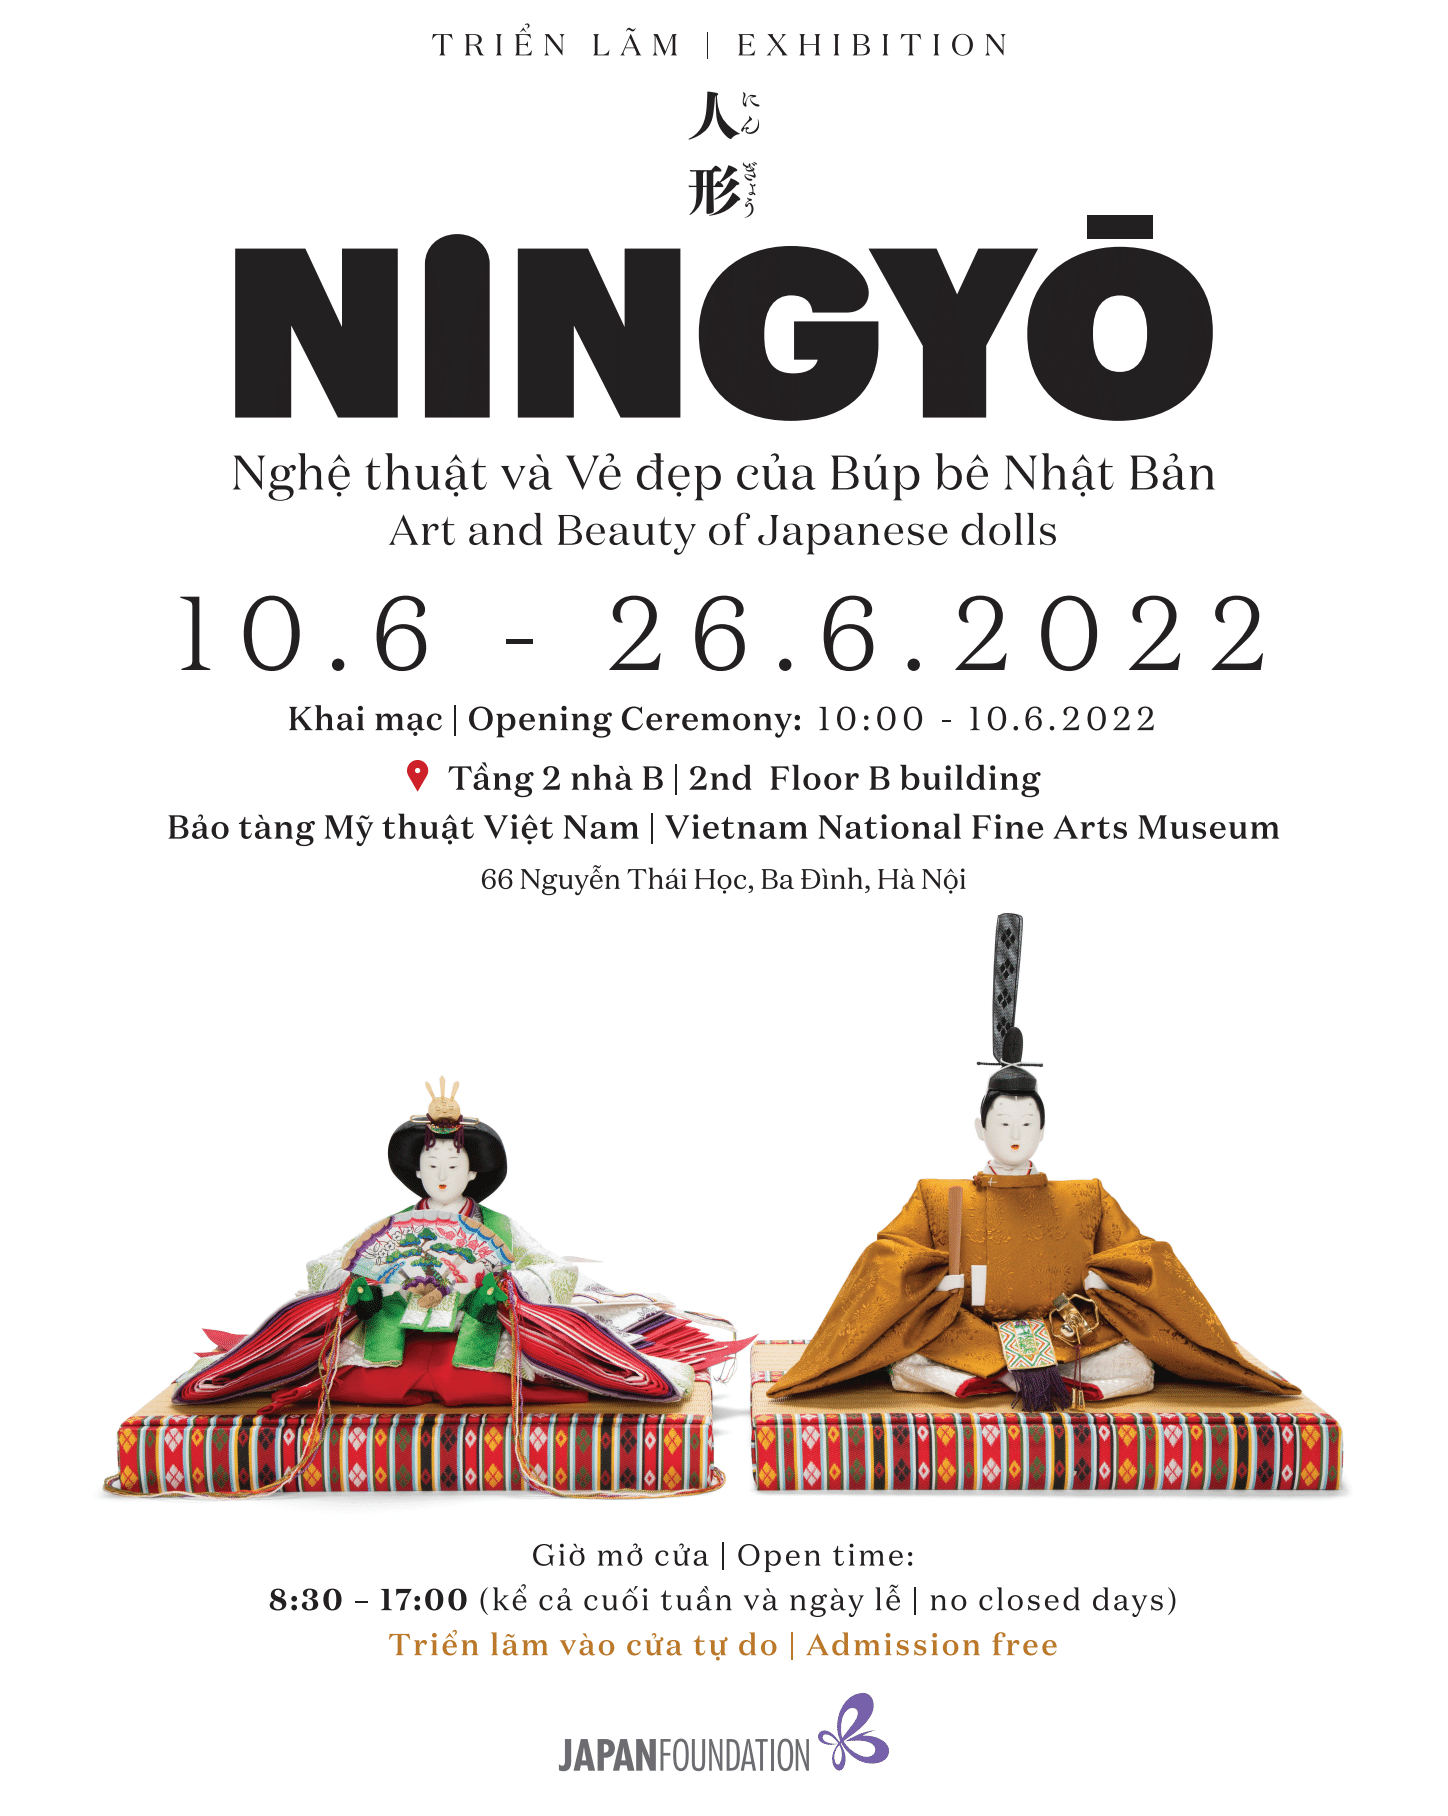 Triển lãm tại Hà Nội - NINGYŌ - Nghệ thuật và vẻ đẹp của BÚP BÊ NHẬT BẢN